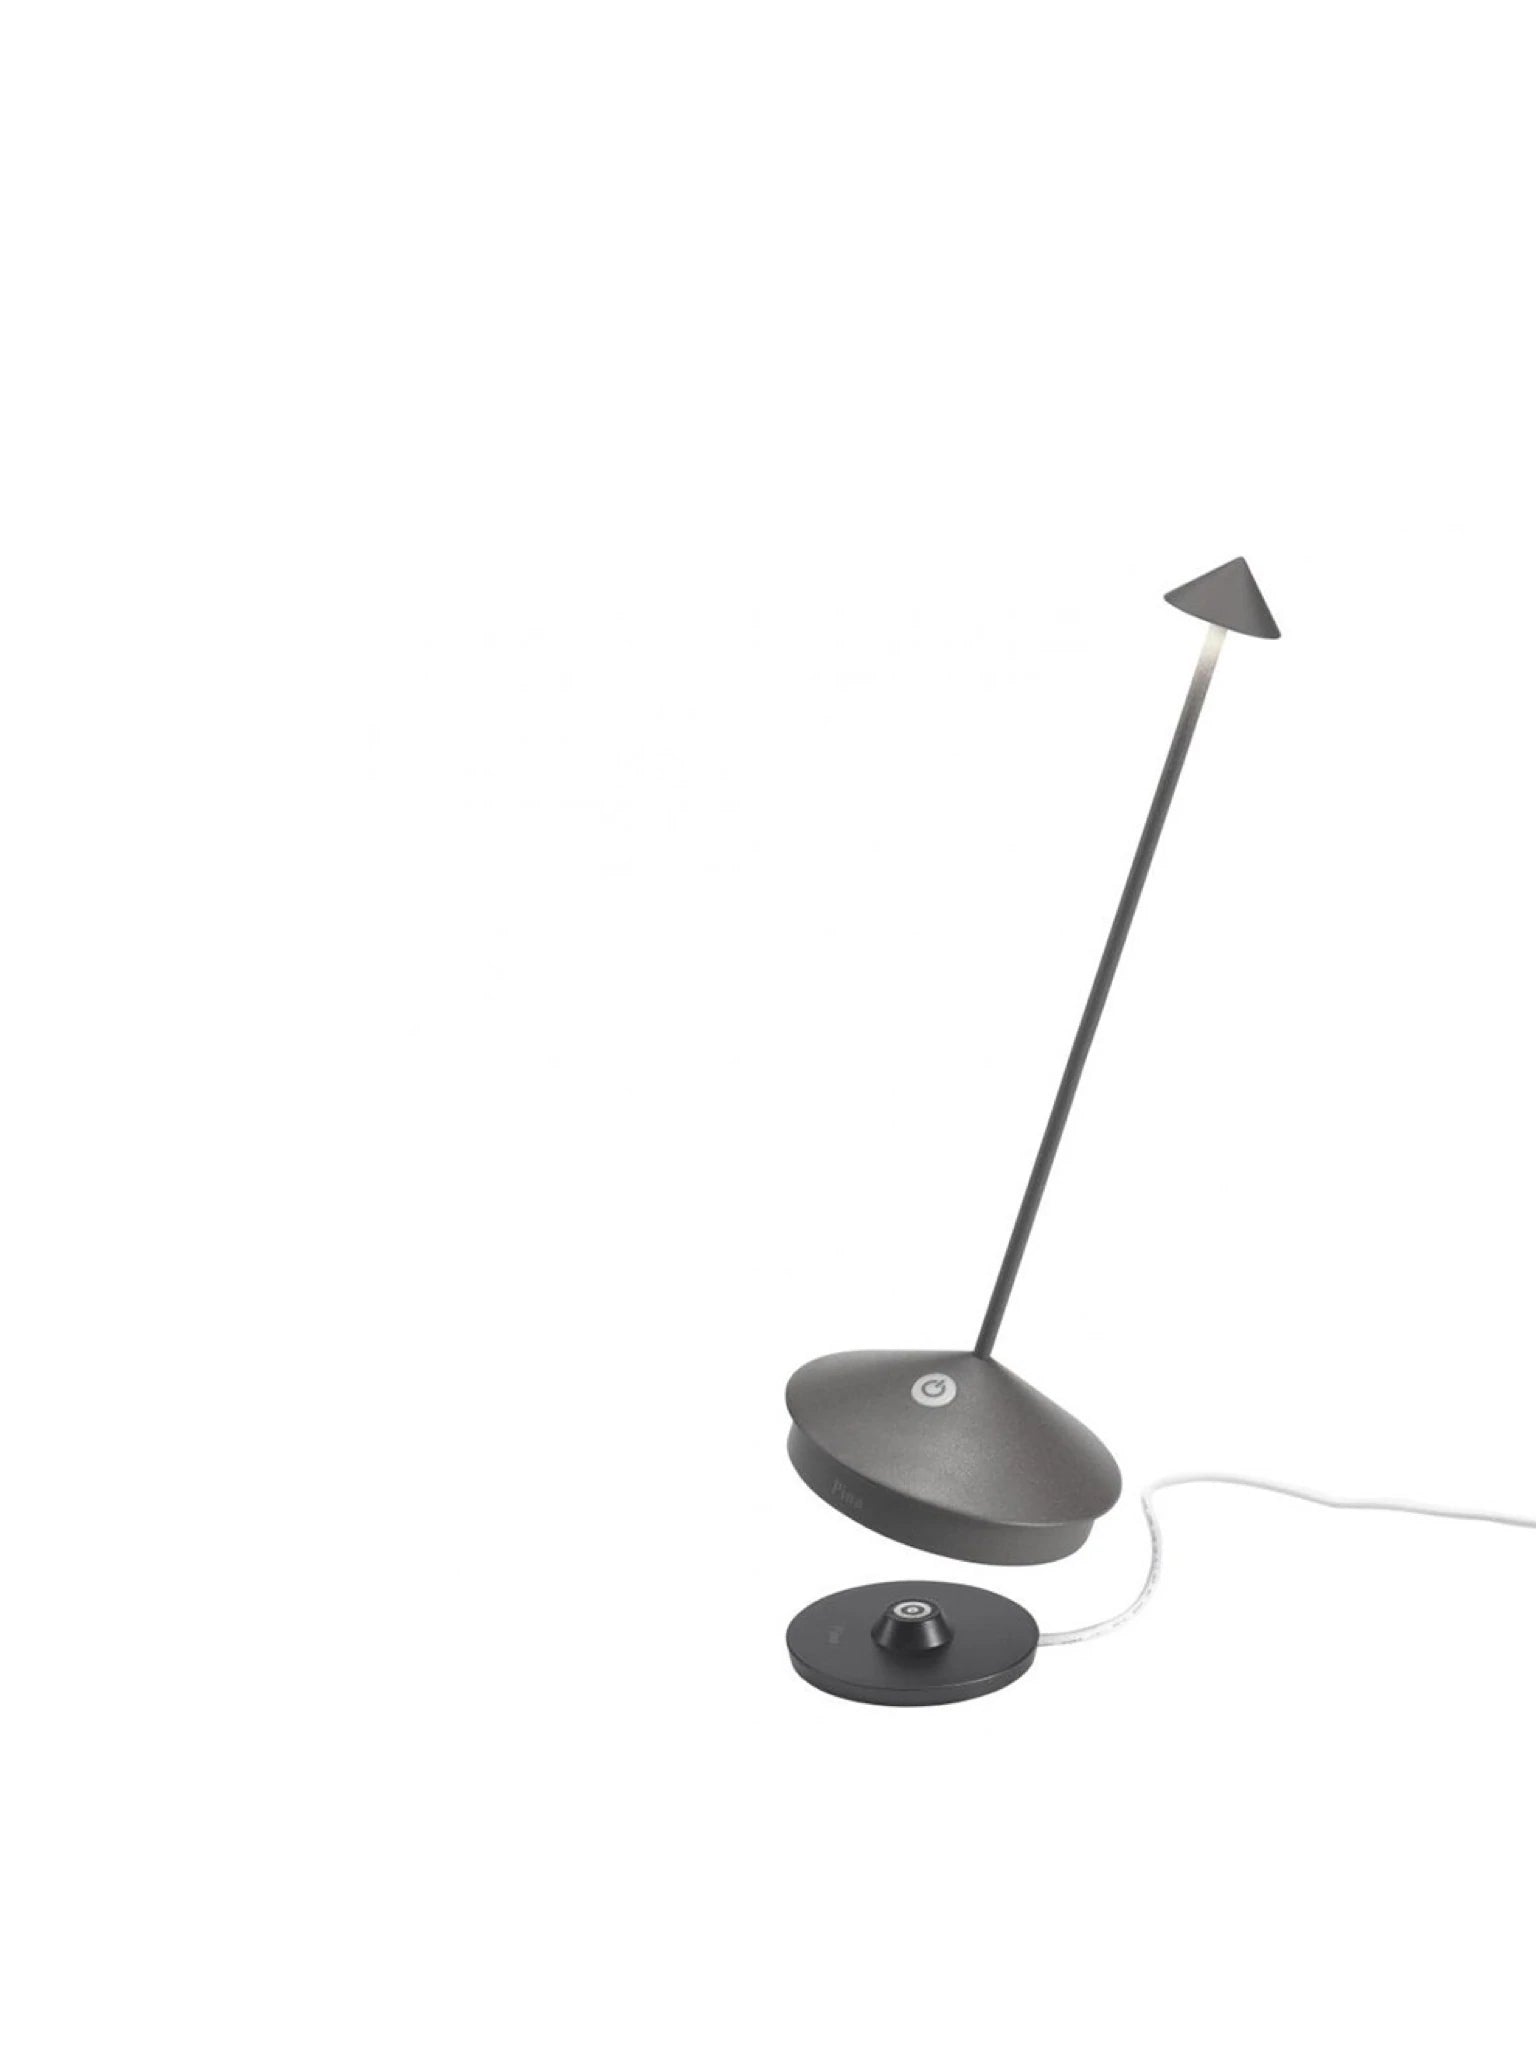 Pina Pro Table Lamps - Black